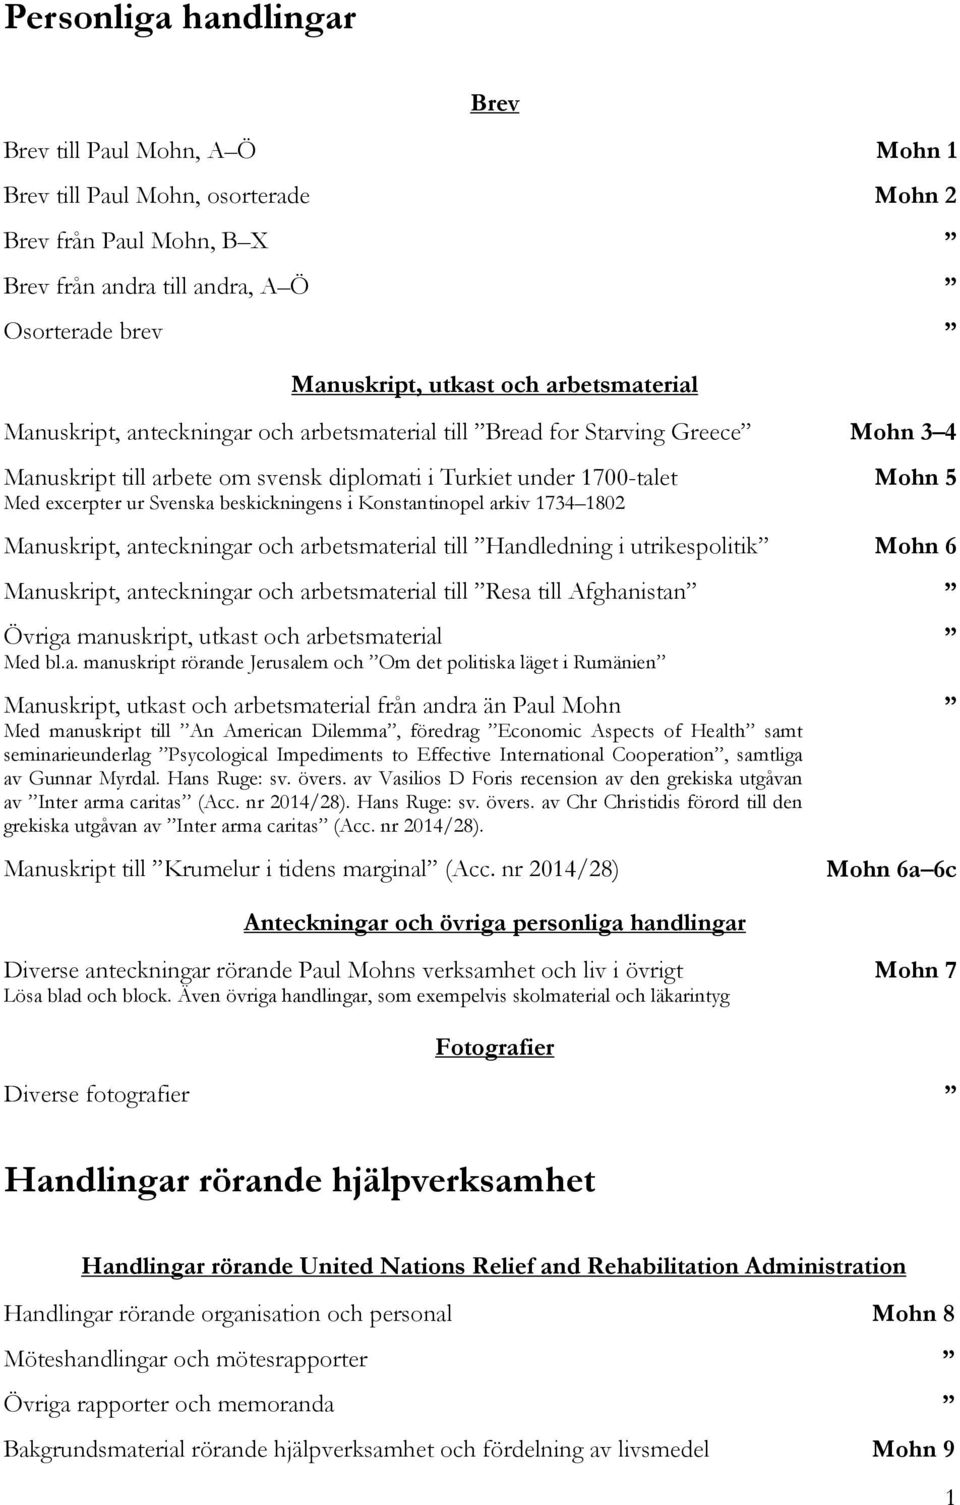 beskickningens i Konstantinopel arkiv 1734 1802 Mohn 5 Manuskript, anteckningar och arbetsmaterial till Handledning i utrikespolitik Mohn 6 Manuskript, anteckningar och arbetsmaterial till Resa till